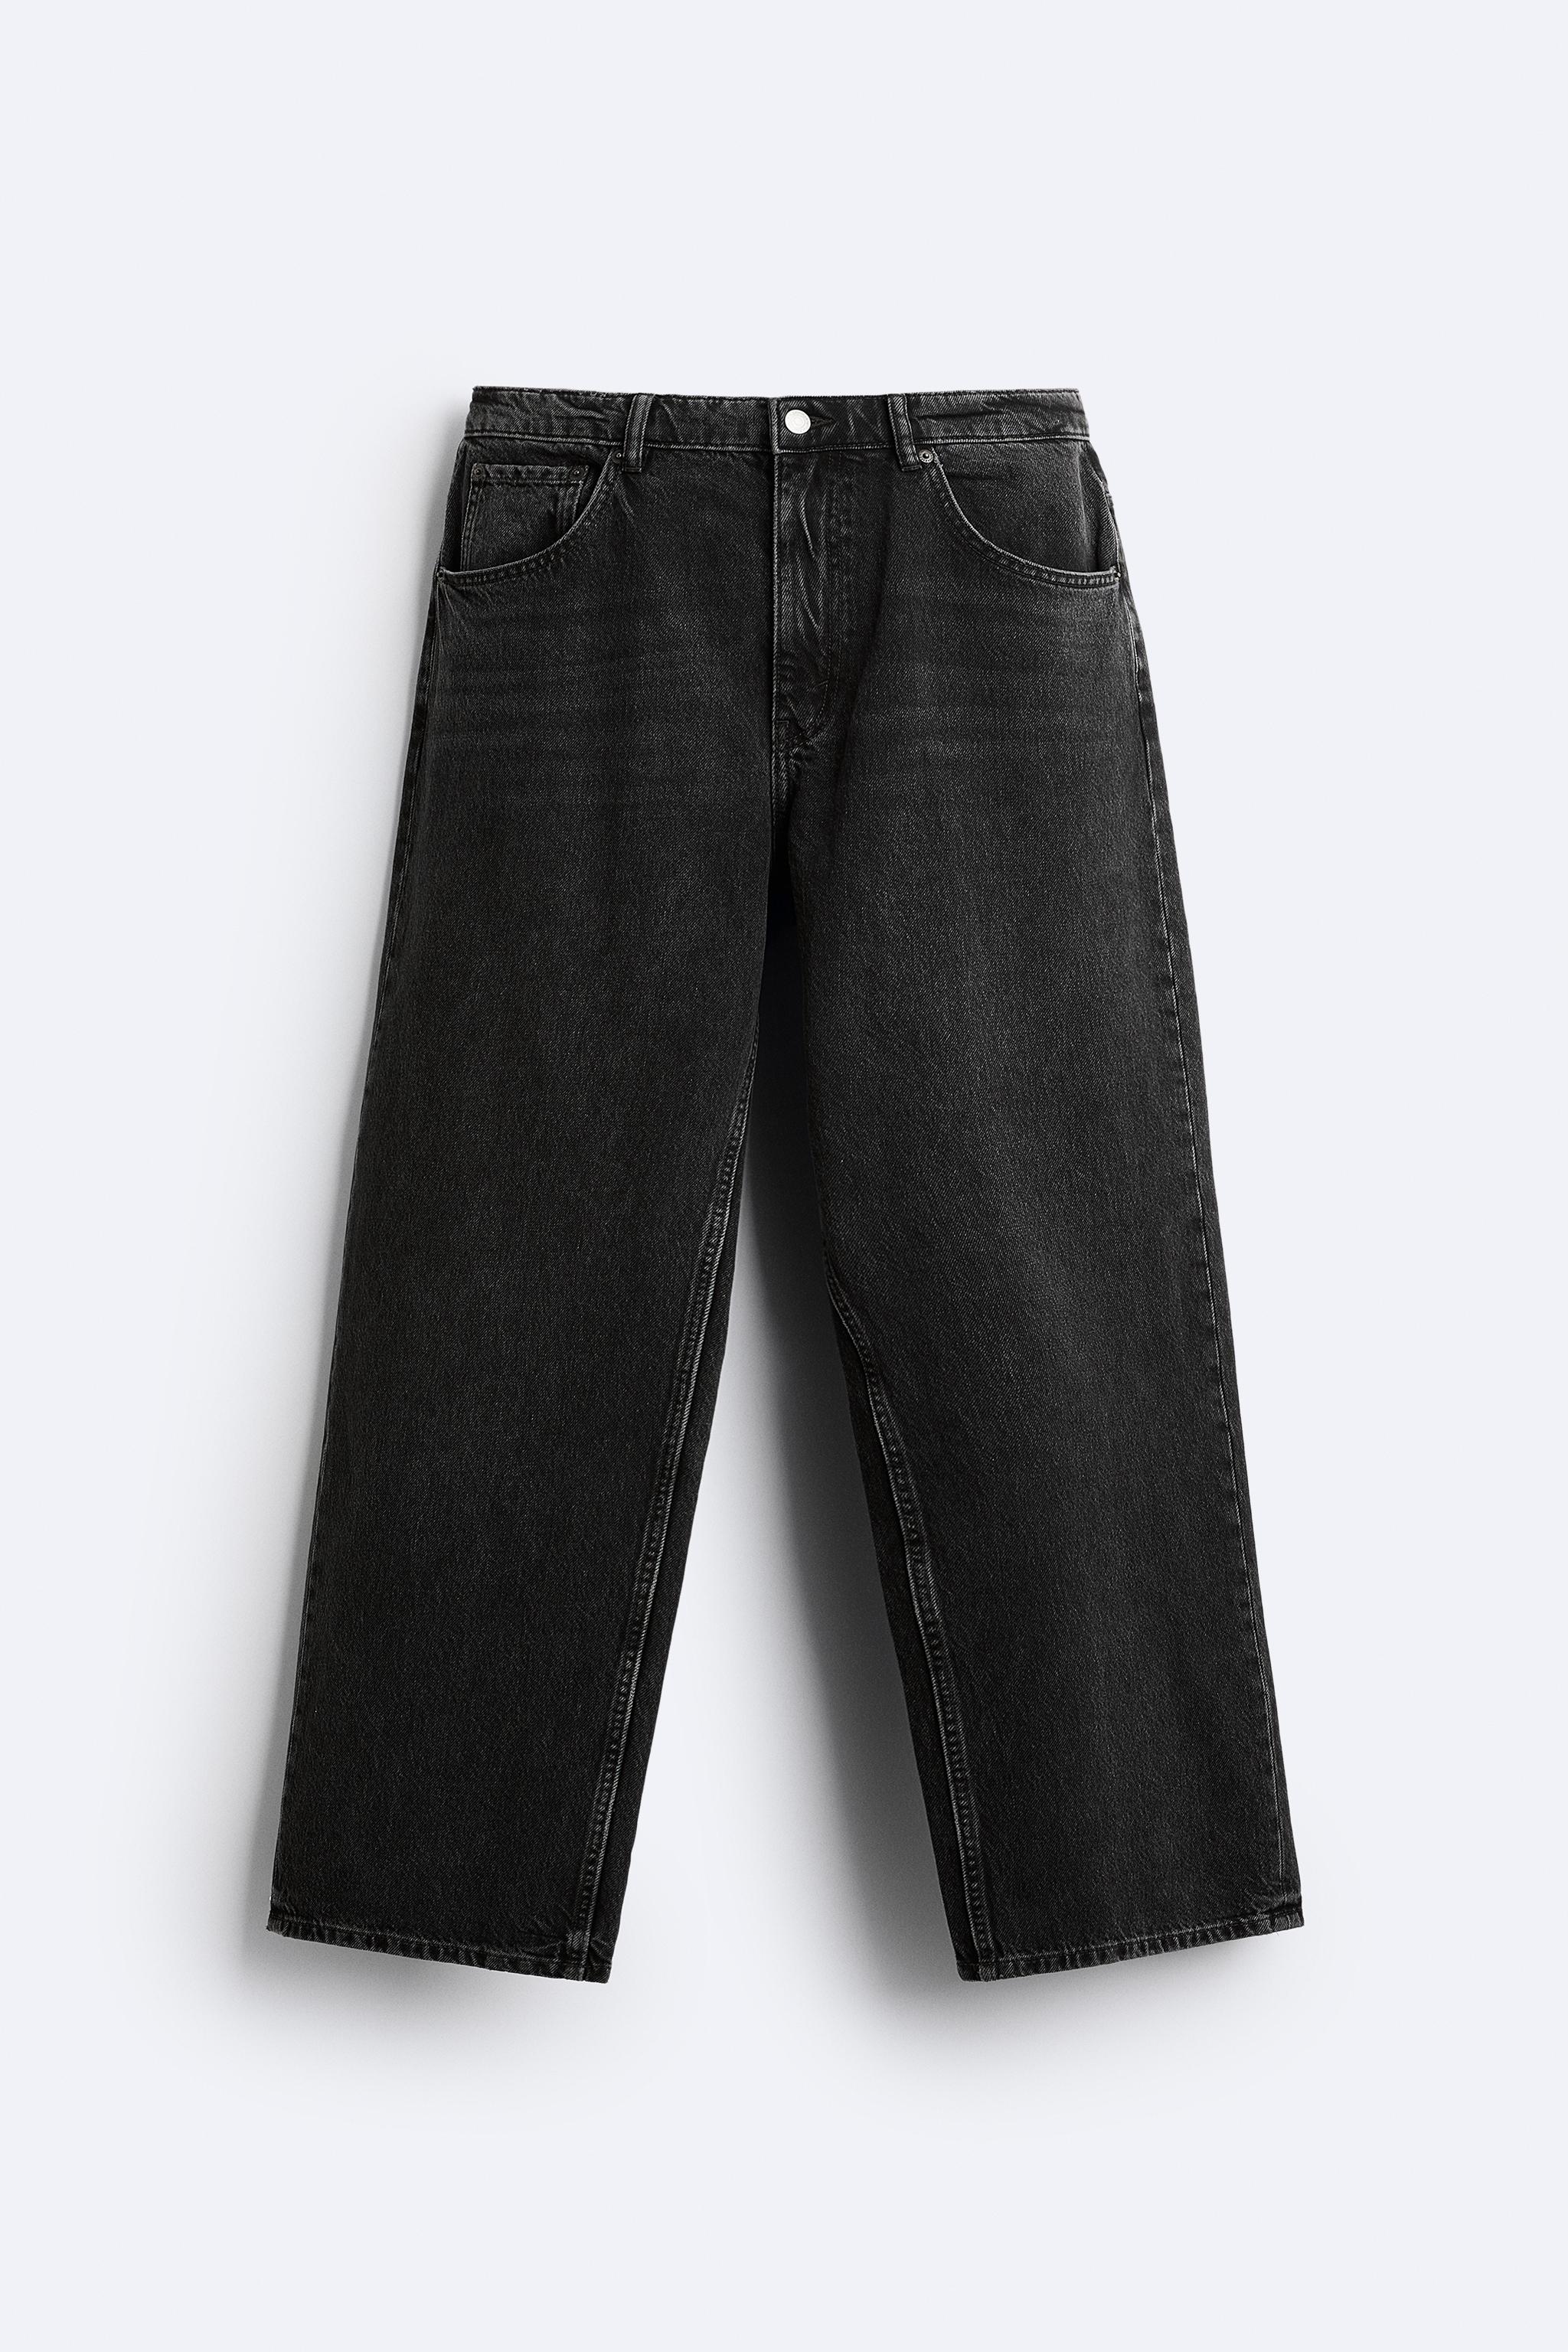 ZARA Baggy Jeans with Pockets Sz 2